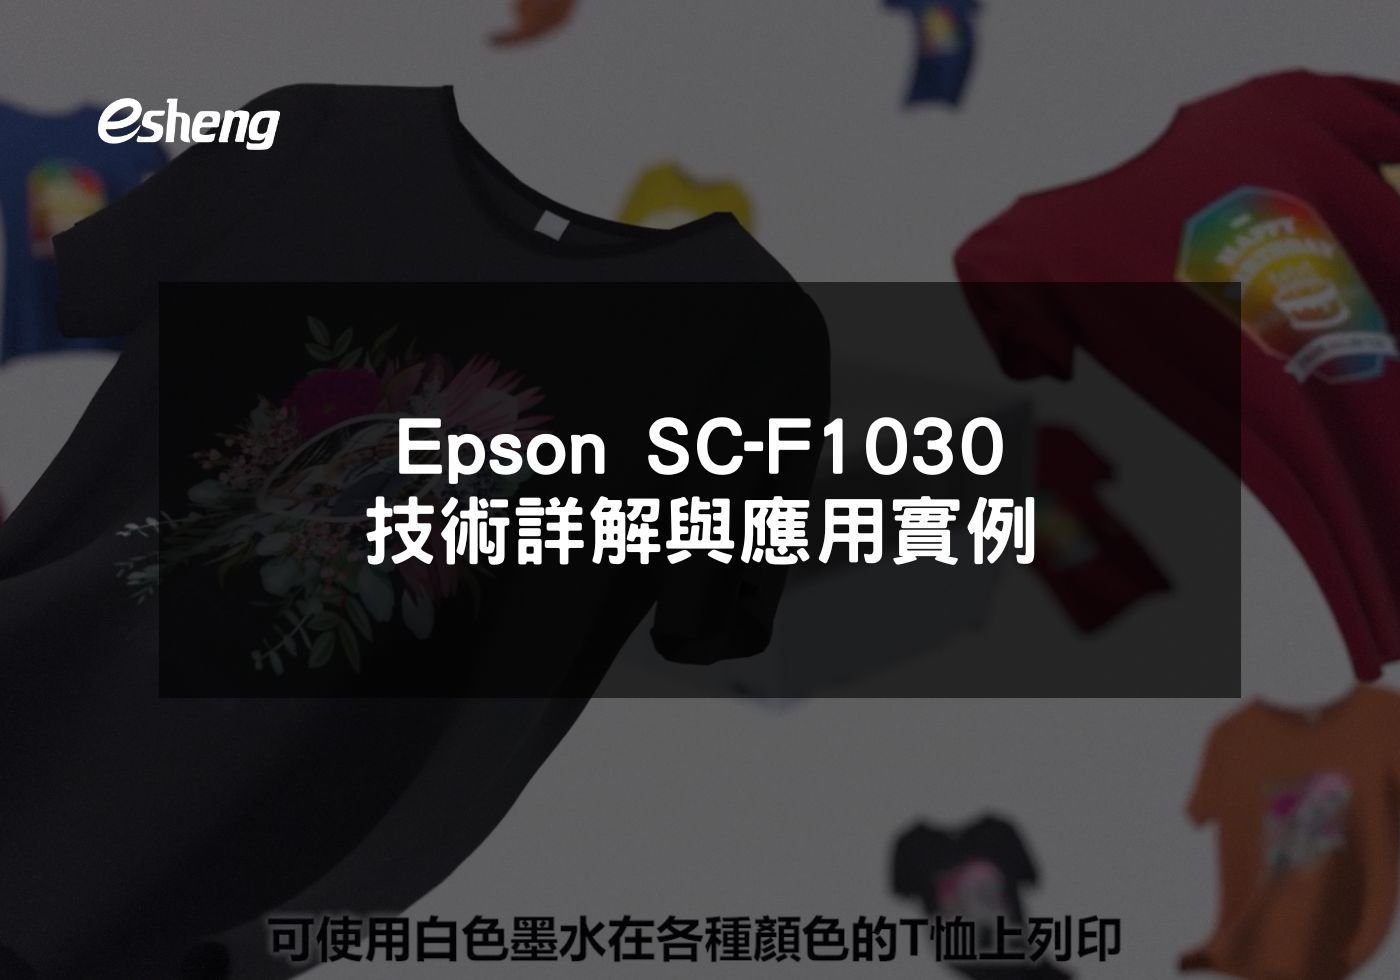 閱讀更多文章 Epson SC-F1030 技術詳解與應用實例